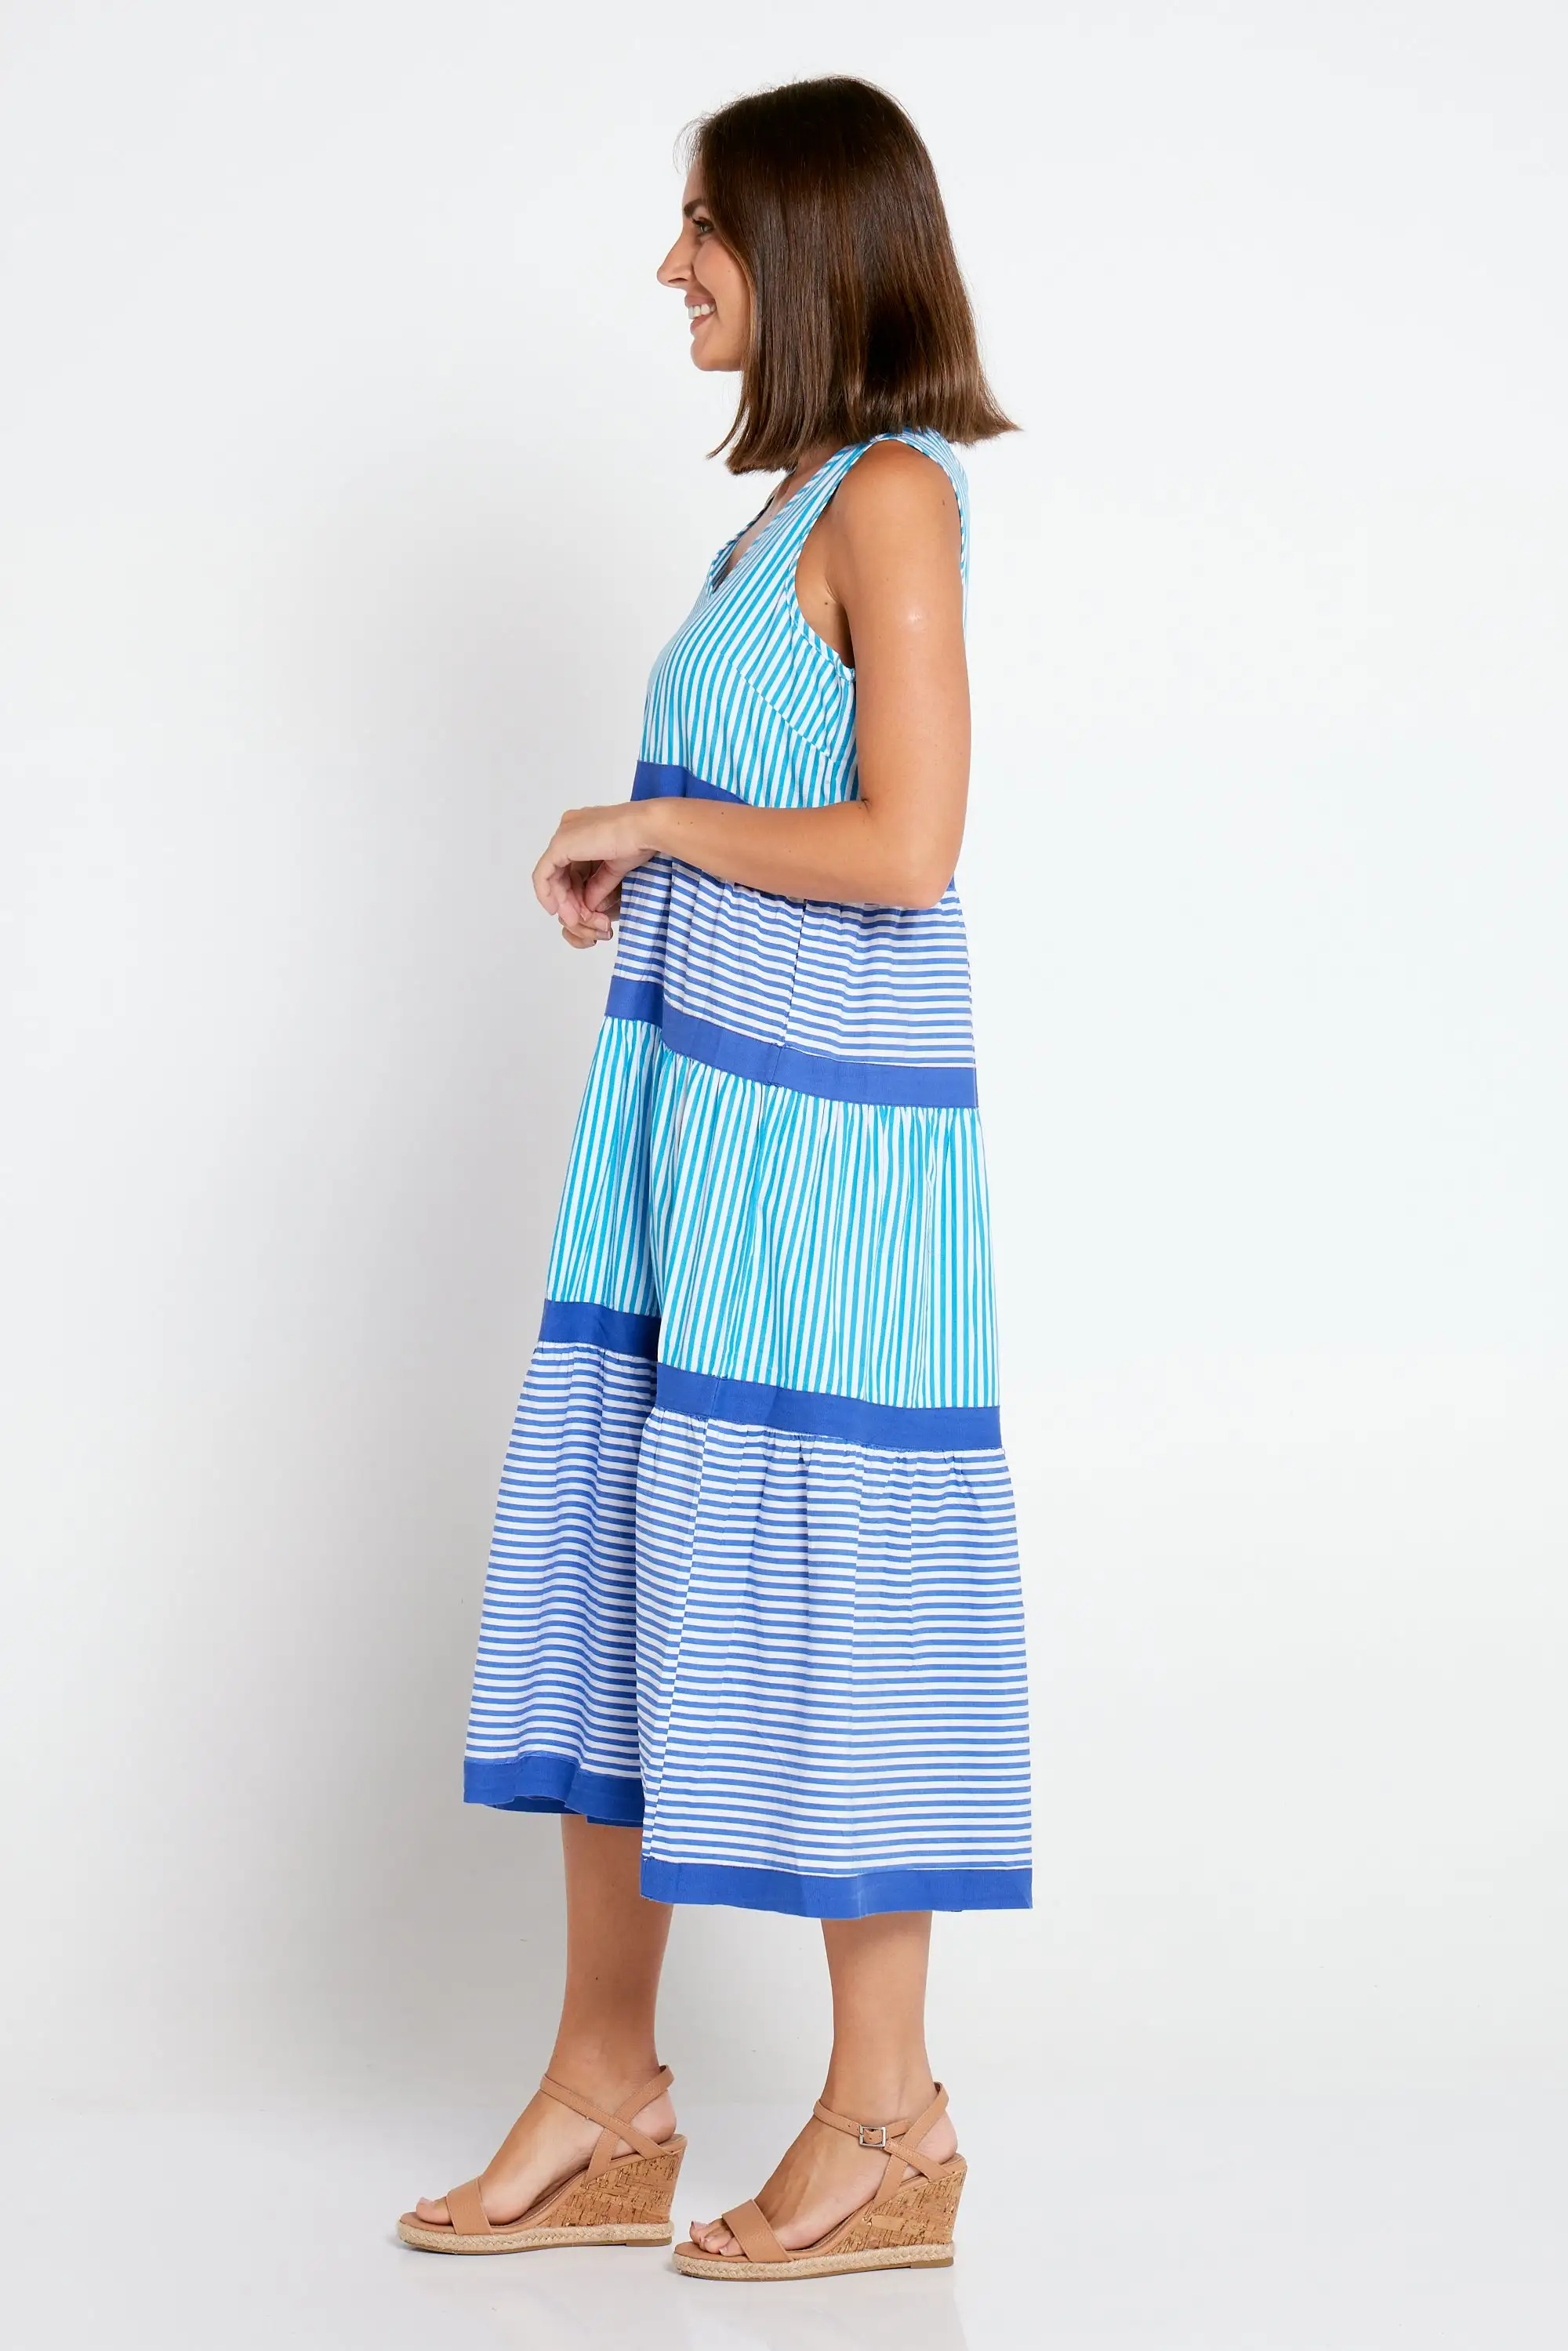 Stillwater Cotton Dress - Cobalt Stripe